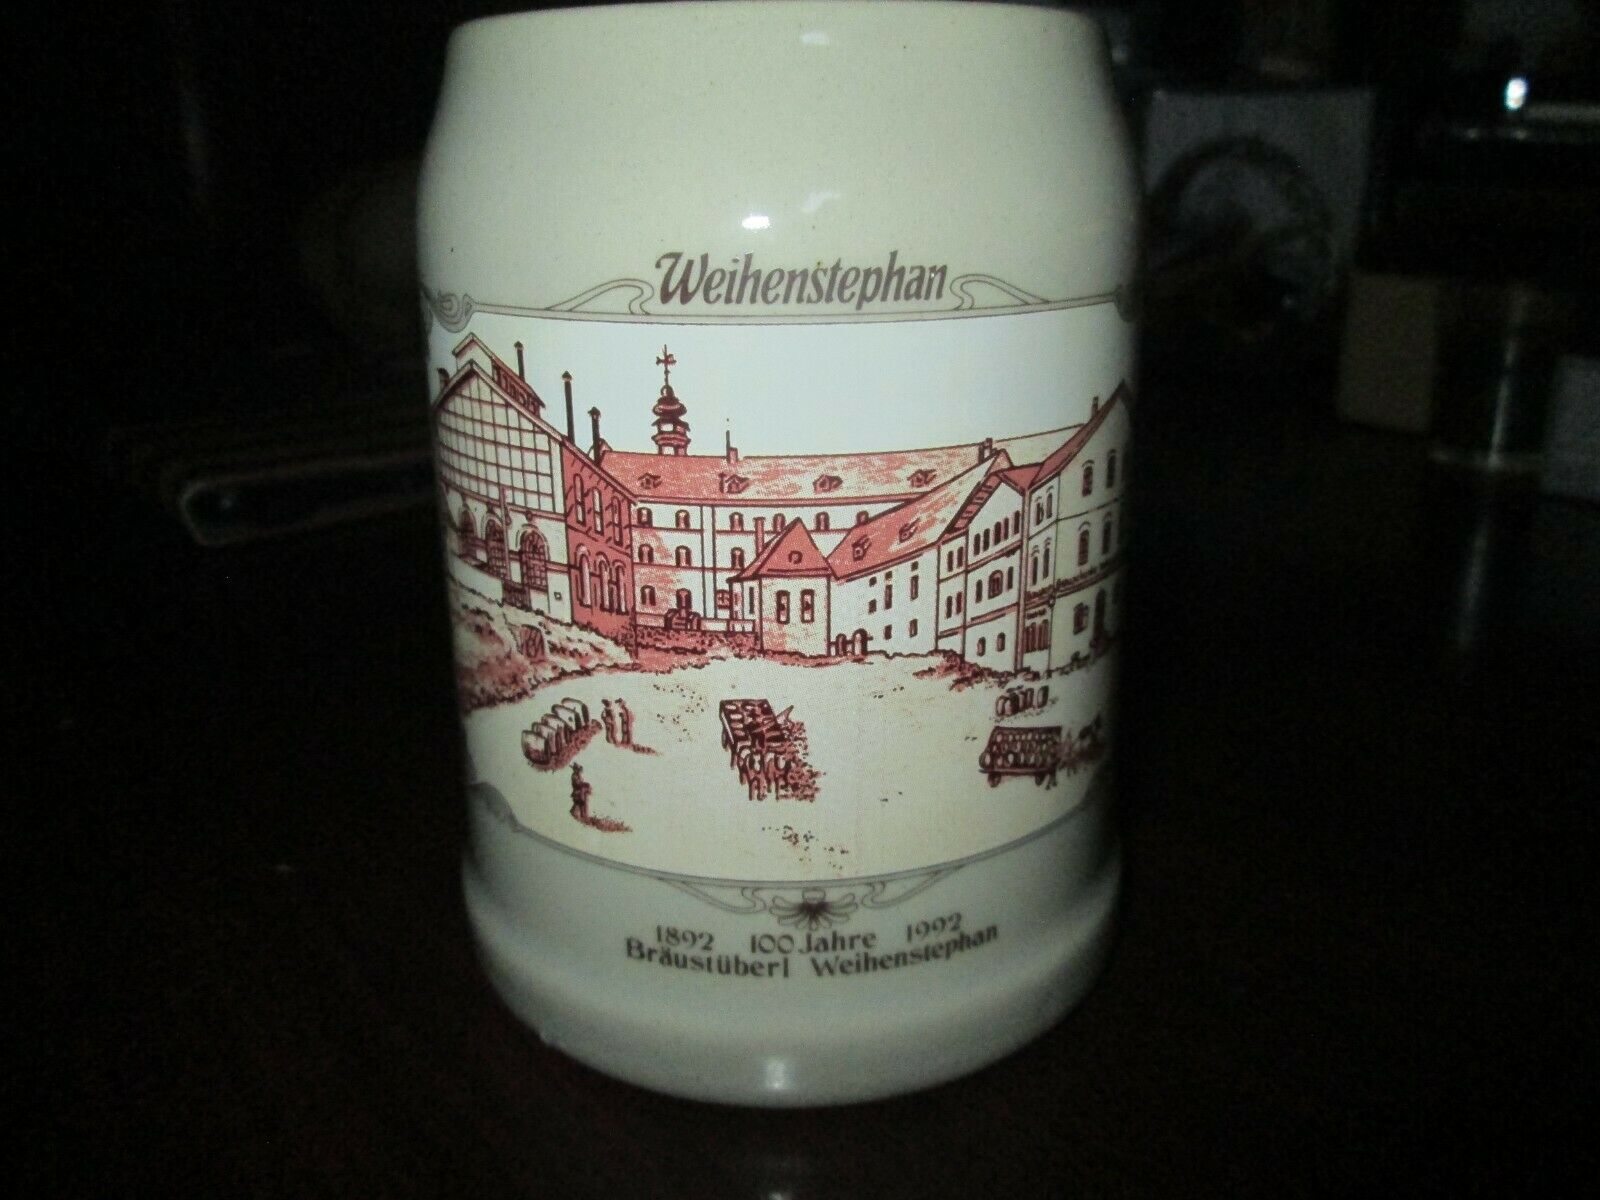 0.5l Weihenstephan German Beer Mug - Vintage - 1892 100 Jahre 1992 Braustuberl